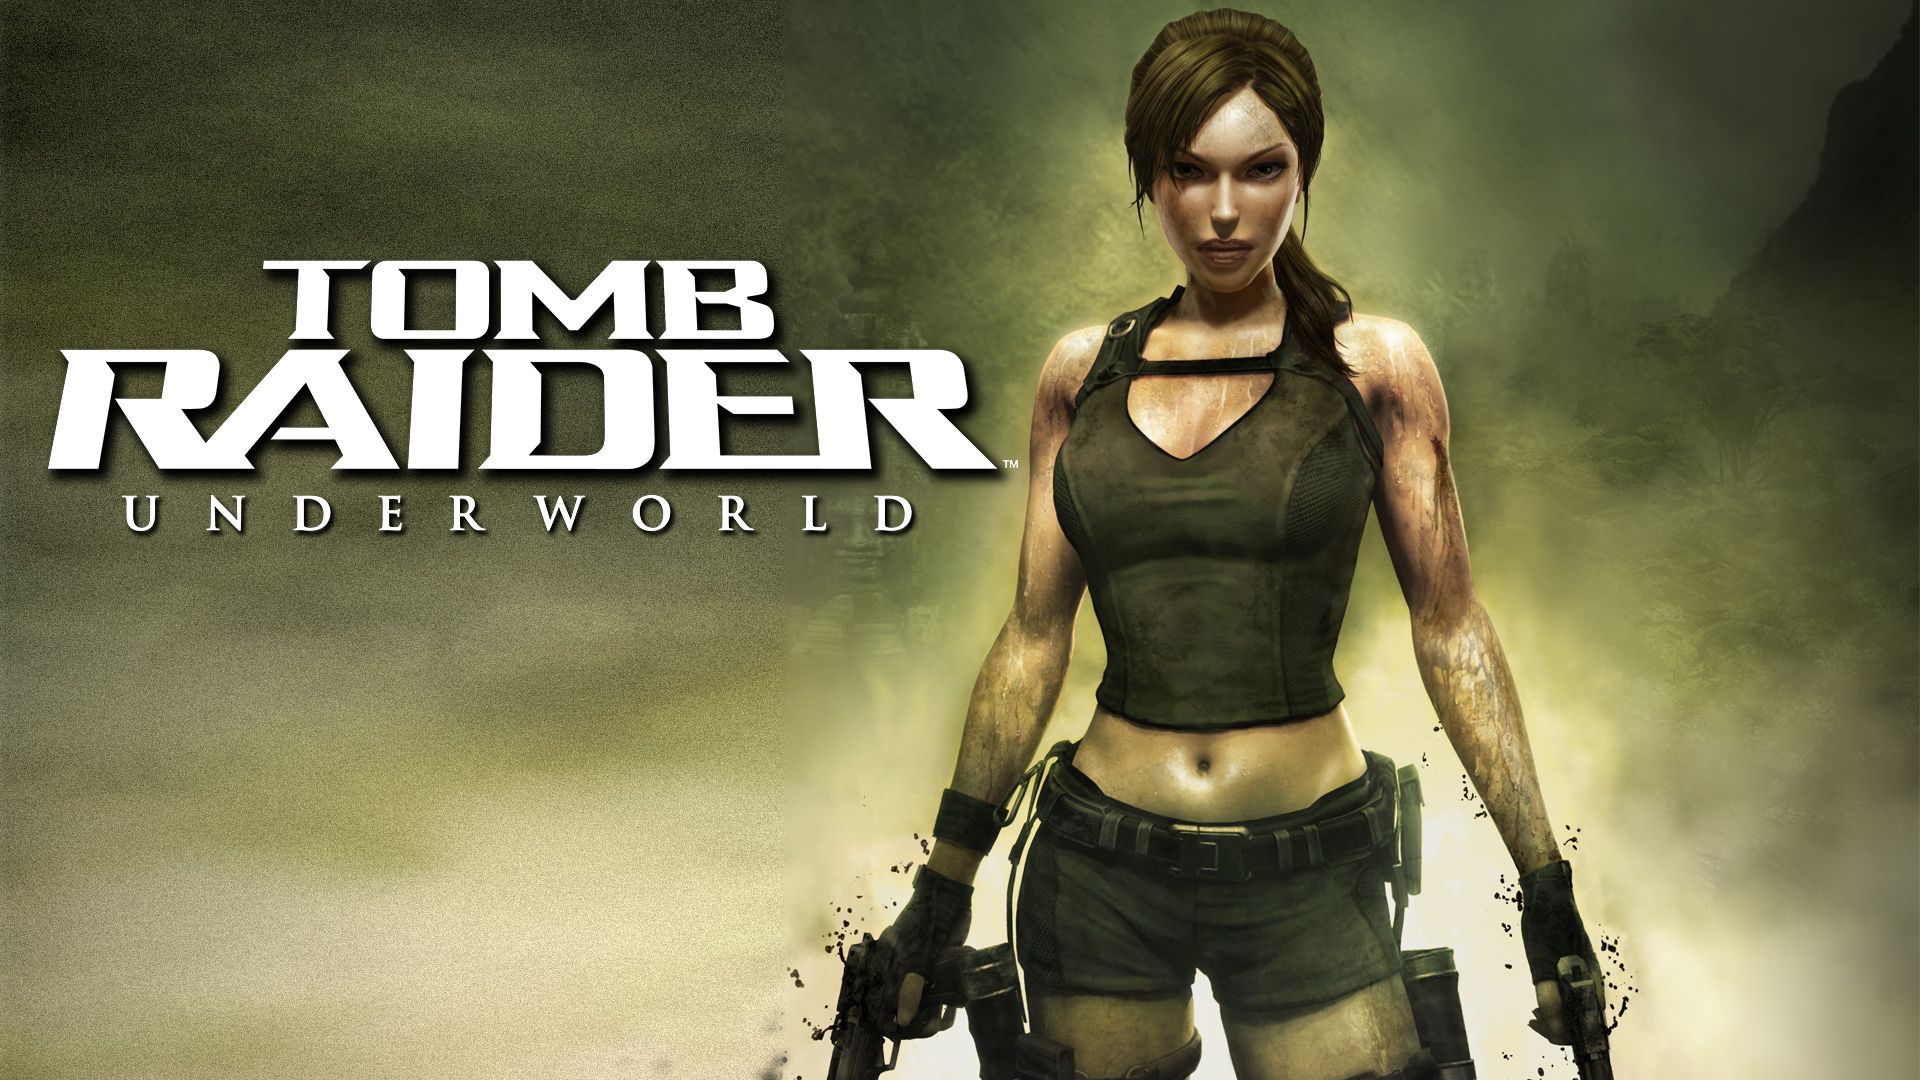 Прохождение игры Tomb Raider: Underworld # 14. HD - Full 1080p. (Русская версия игры)